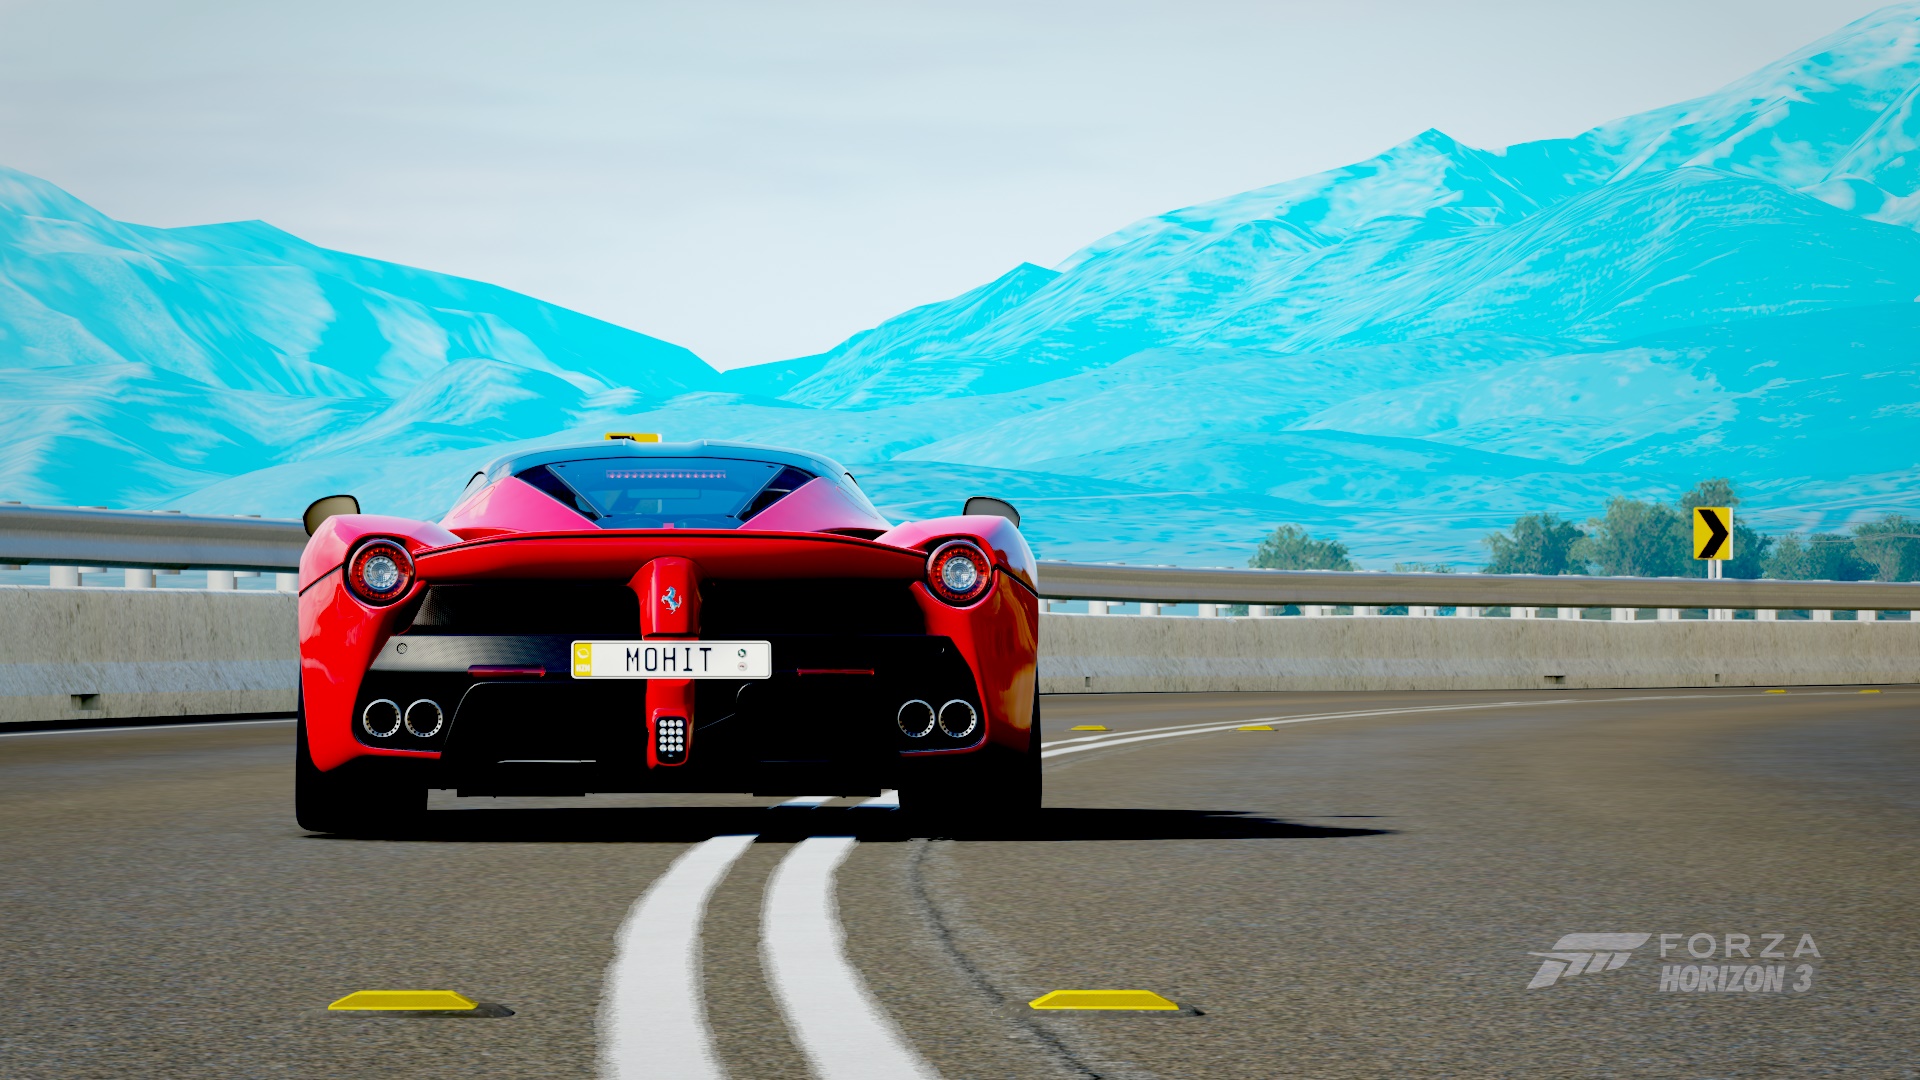 Download mobile wallpaper Car, Ferrari Laferrari, Video Game, Forza Horizon 3, Forza for free.